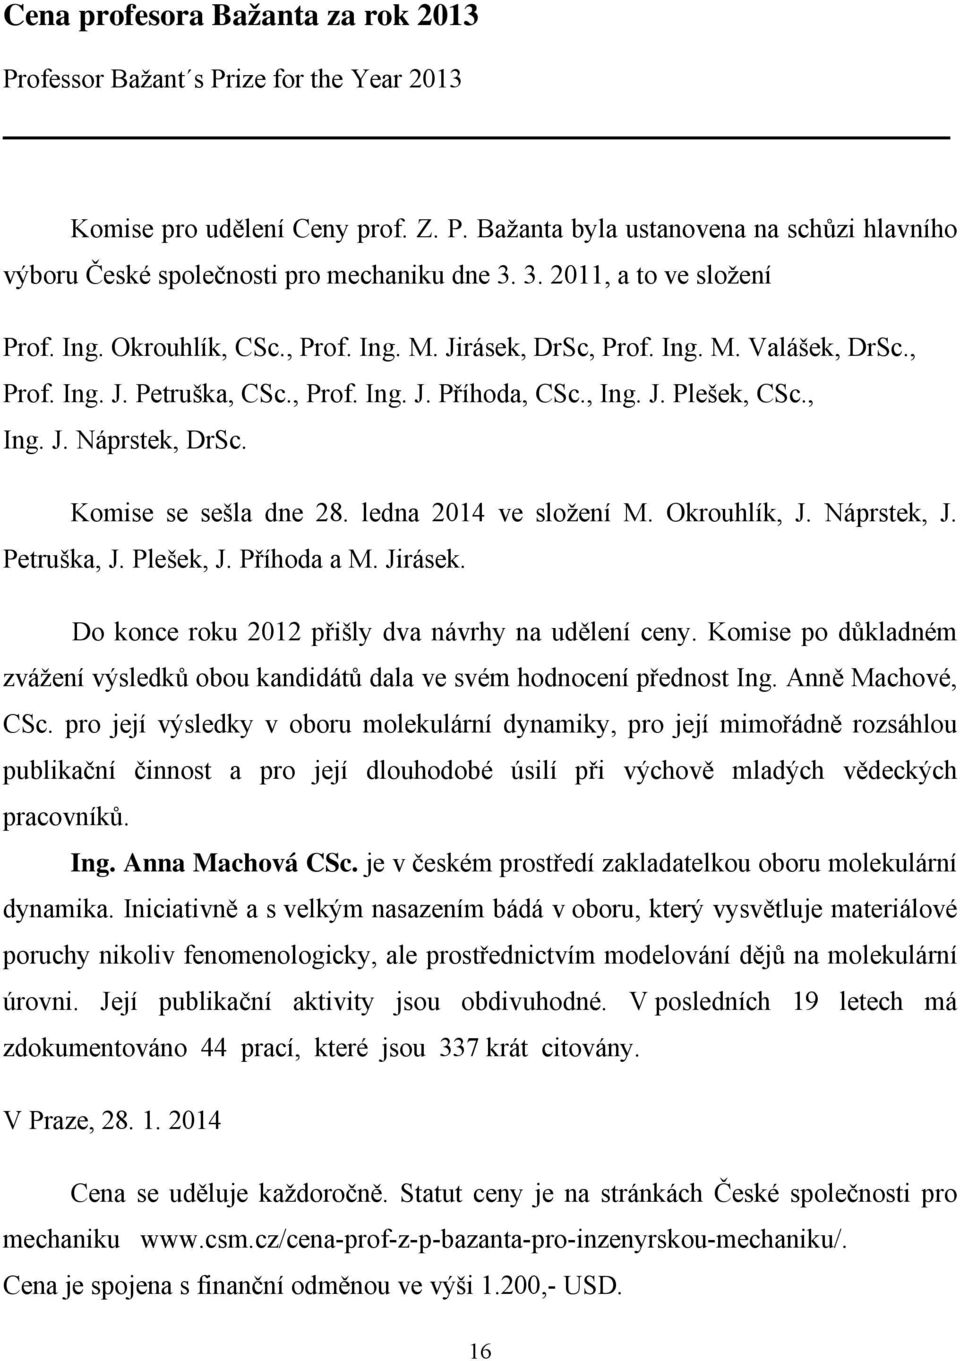 Komise se sešla dne 28. ledna 2014 ve složení M. Okrouhlík, J. Náprstek, J. Petruška, J. Plešek, J. Příhoda a M. Jirásek. Do konce roku 2012 přišly dva návrhy na udělení ceny.